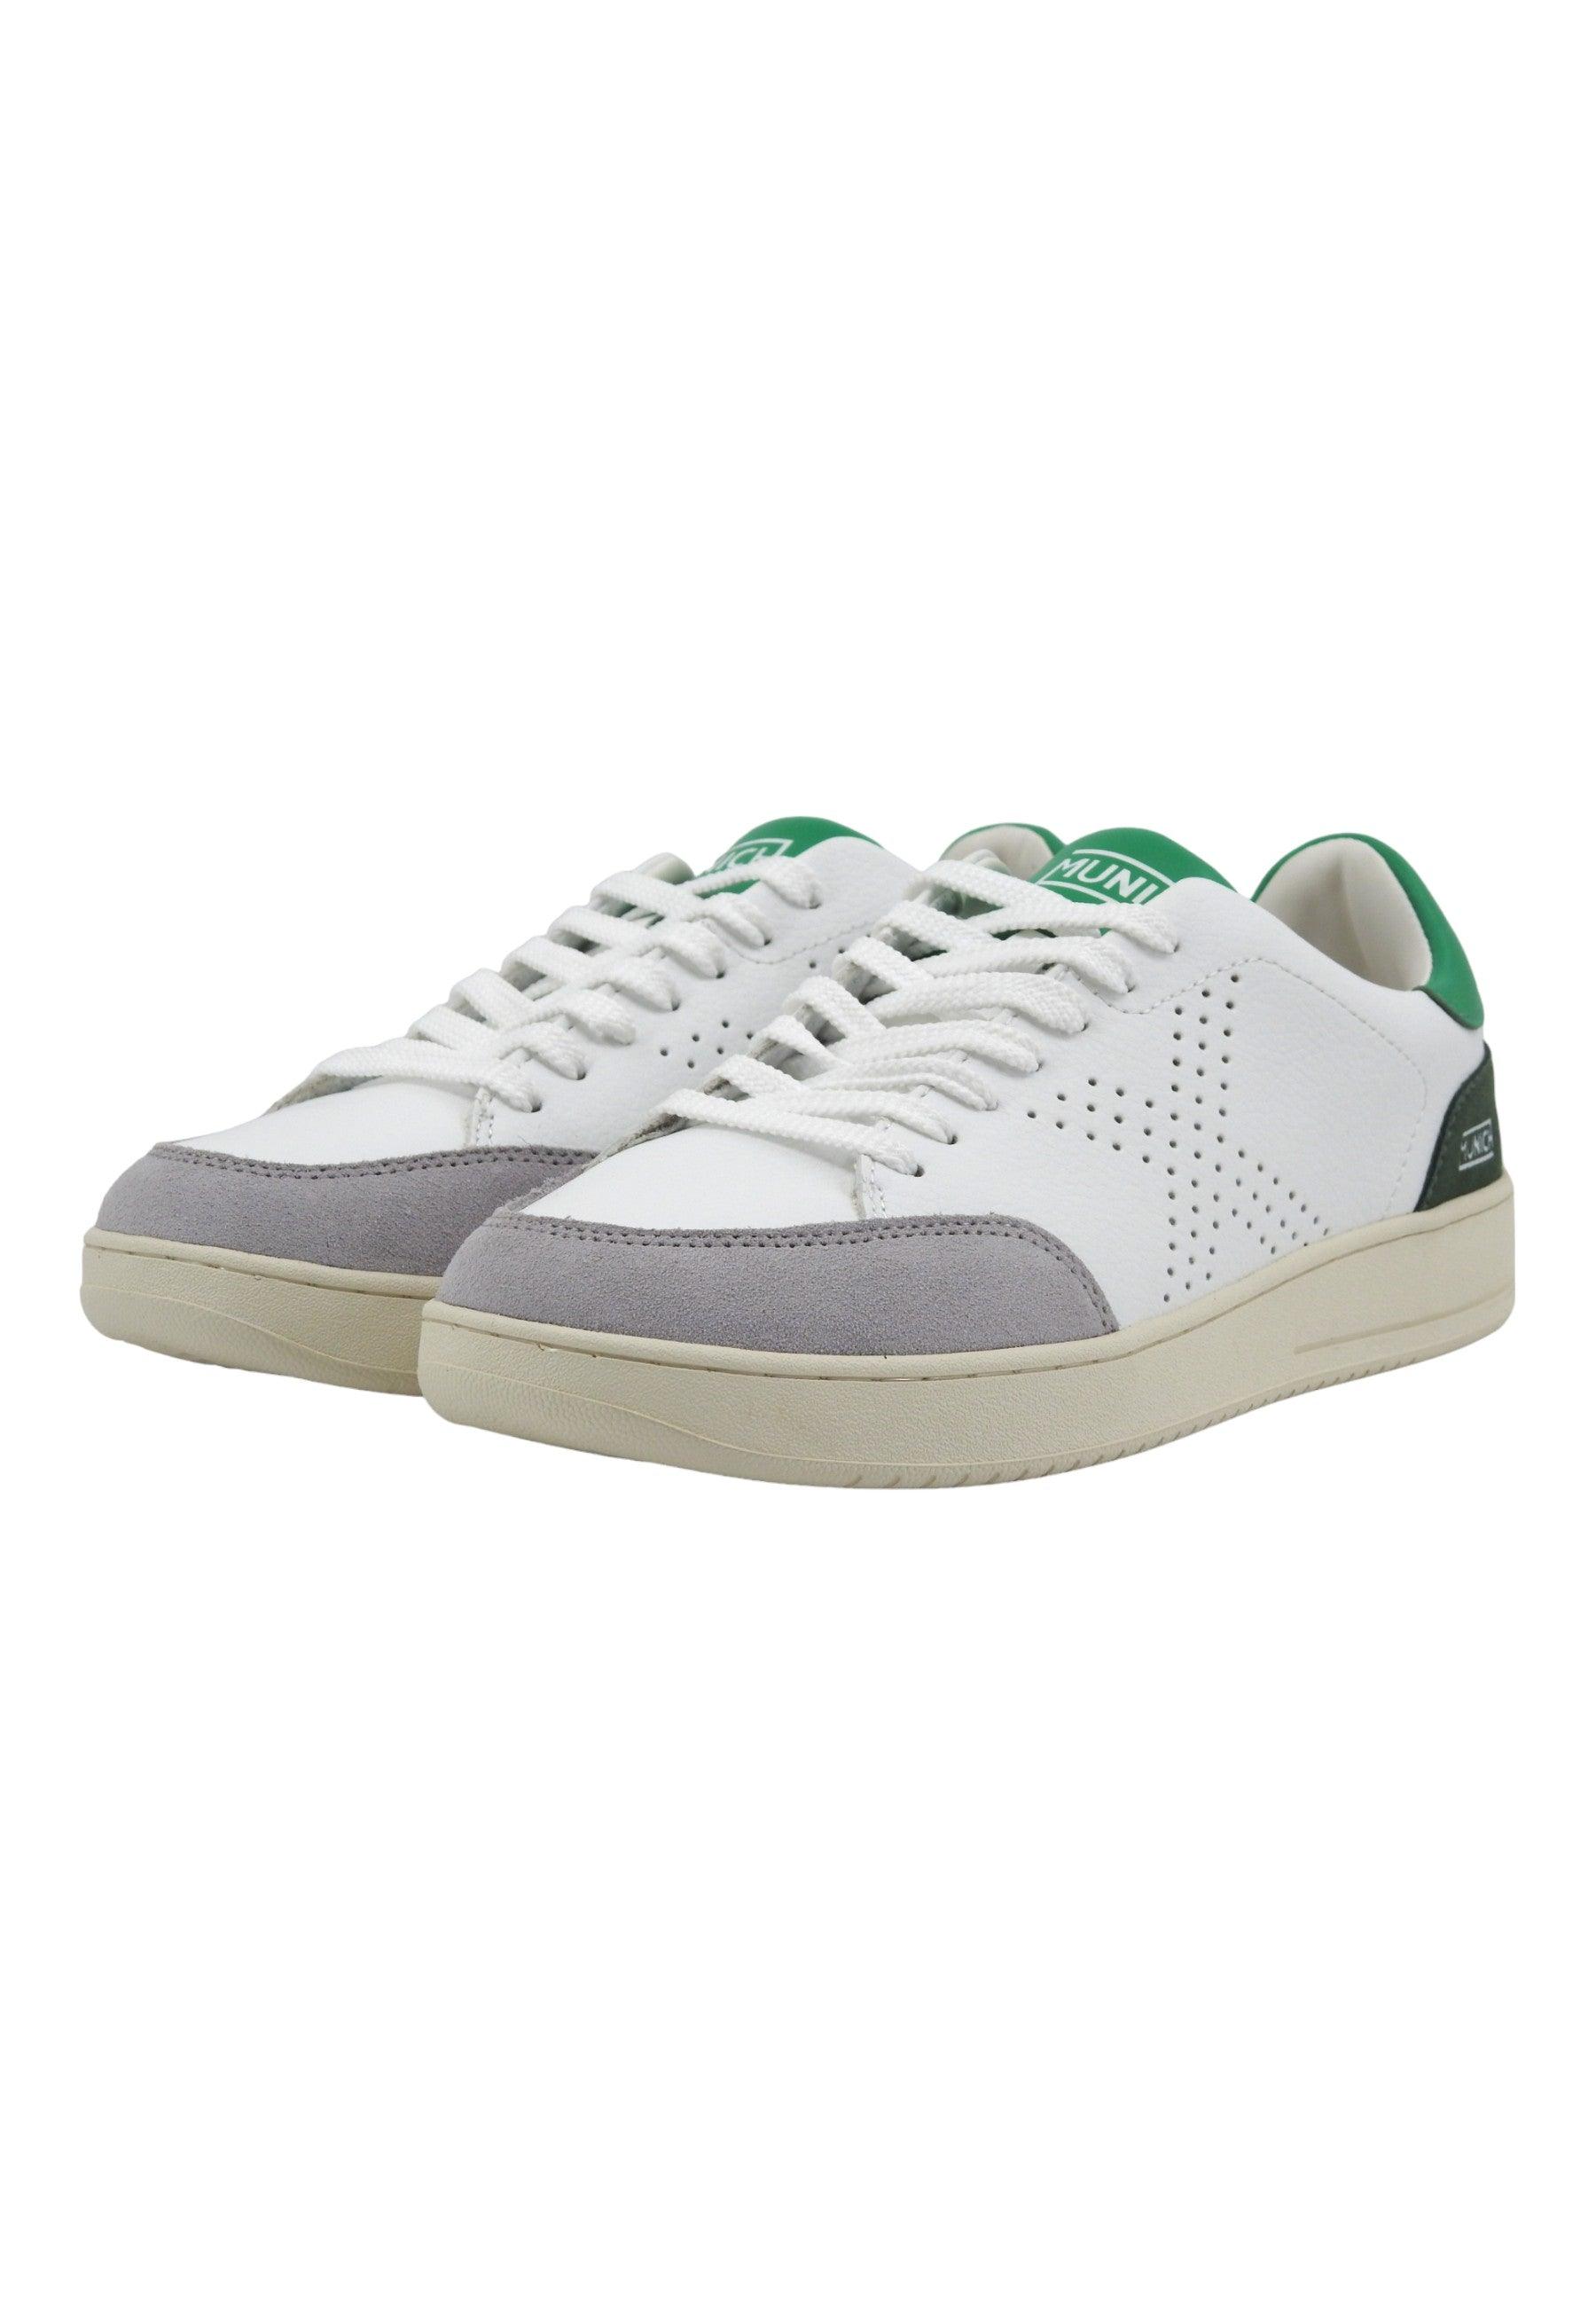 MUNICH X Court 05 Sneaker Uomo White Grey Green 8837005 - Sandrini Calzature e Abbigliamento